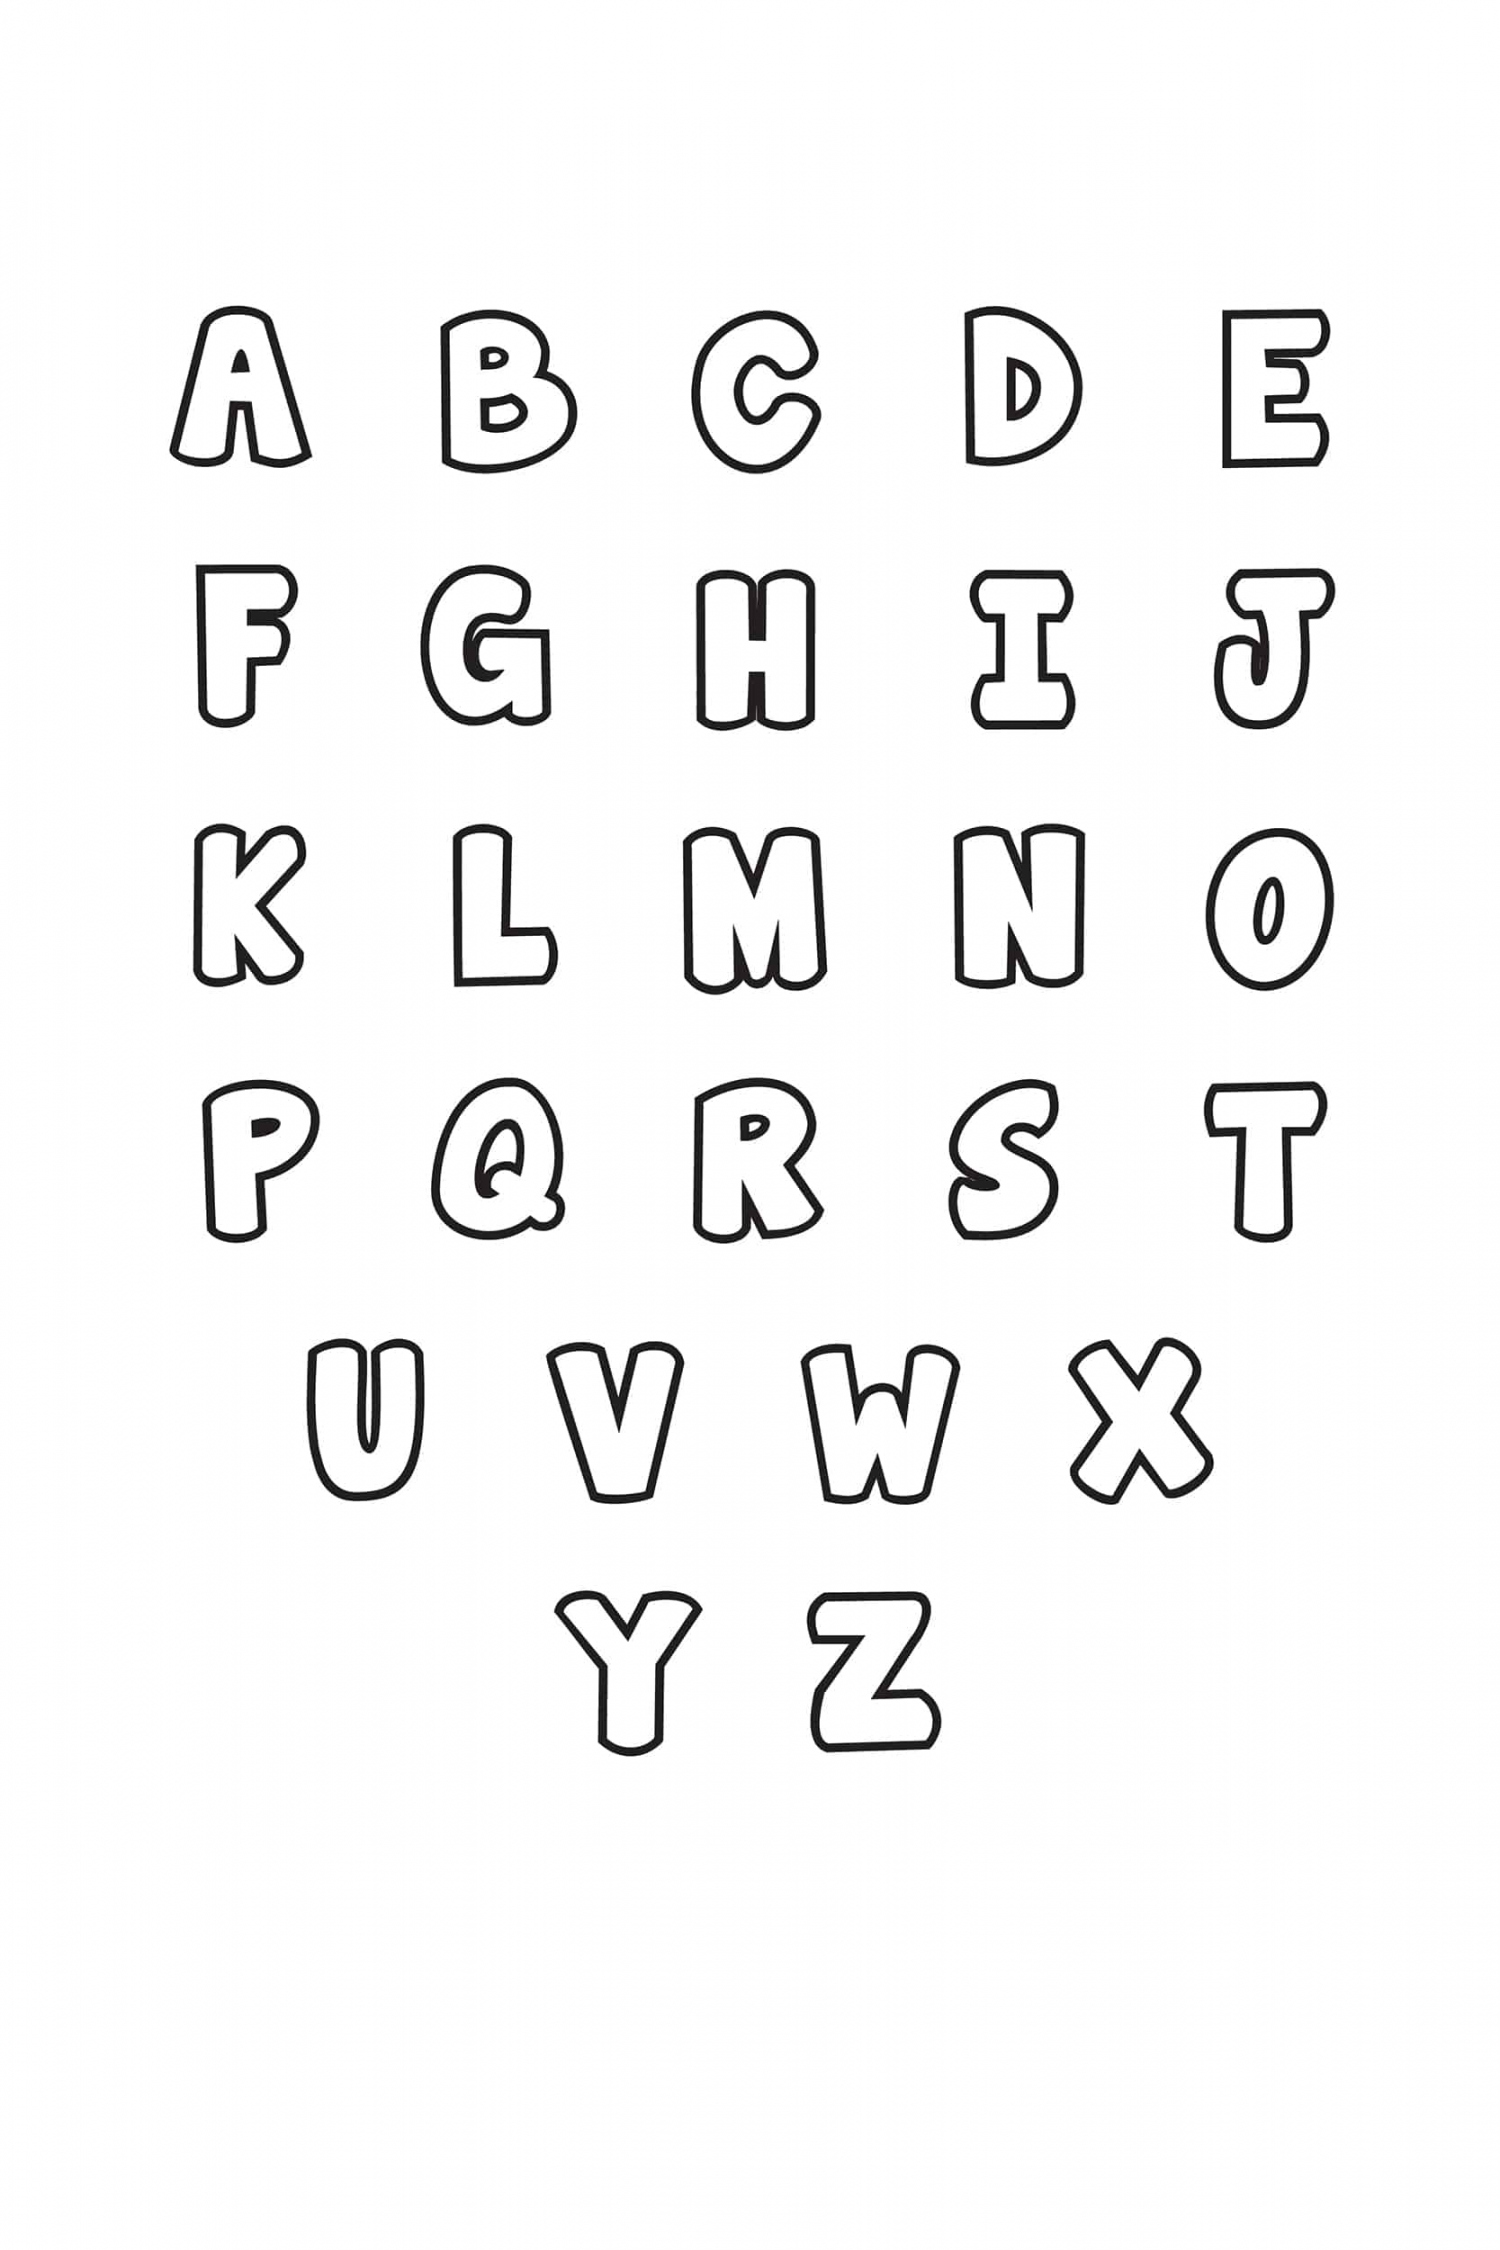 Free Printable Bubble Letter Alphabet Stencils - Freebie Finding Mom - FREE Printables - Free Printable Letter Stencils